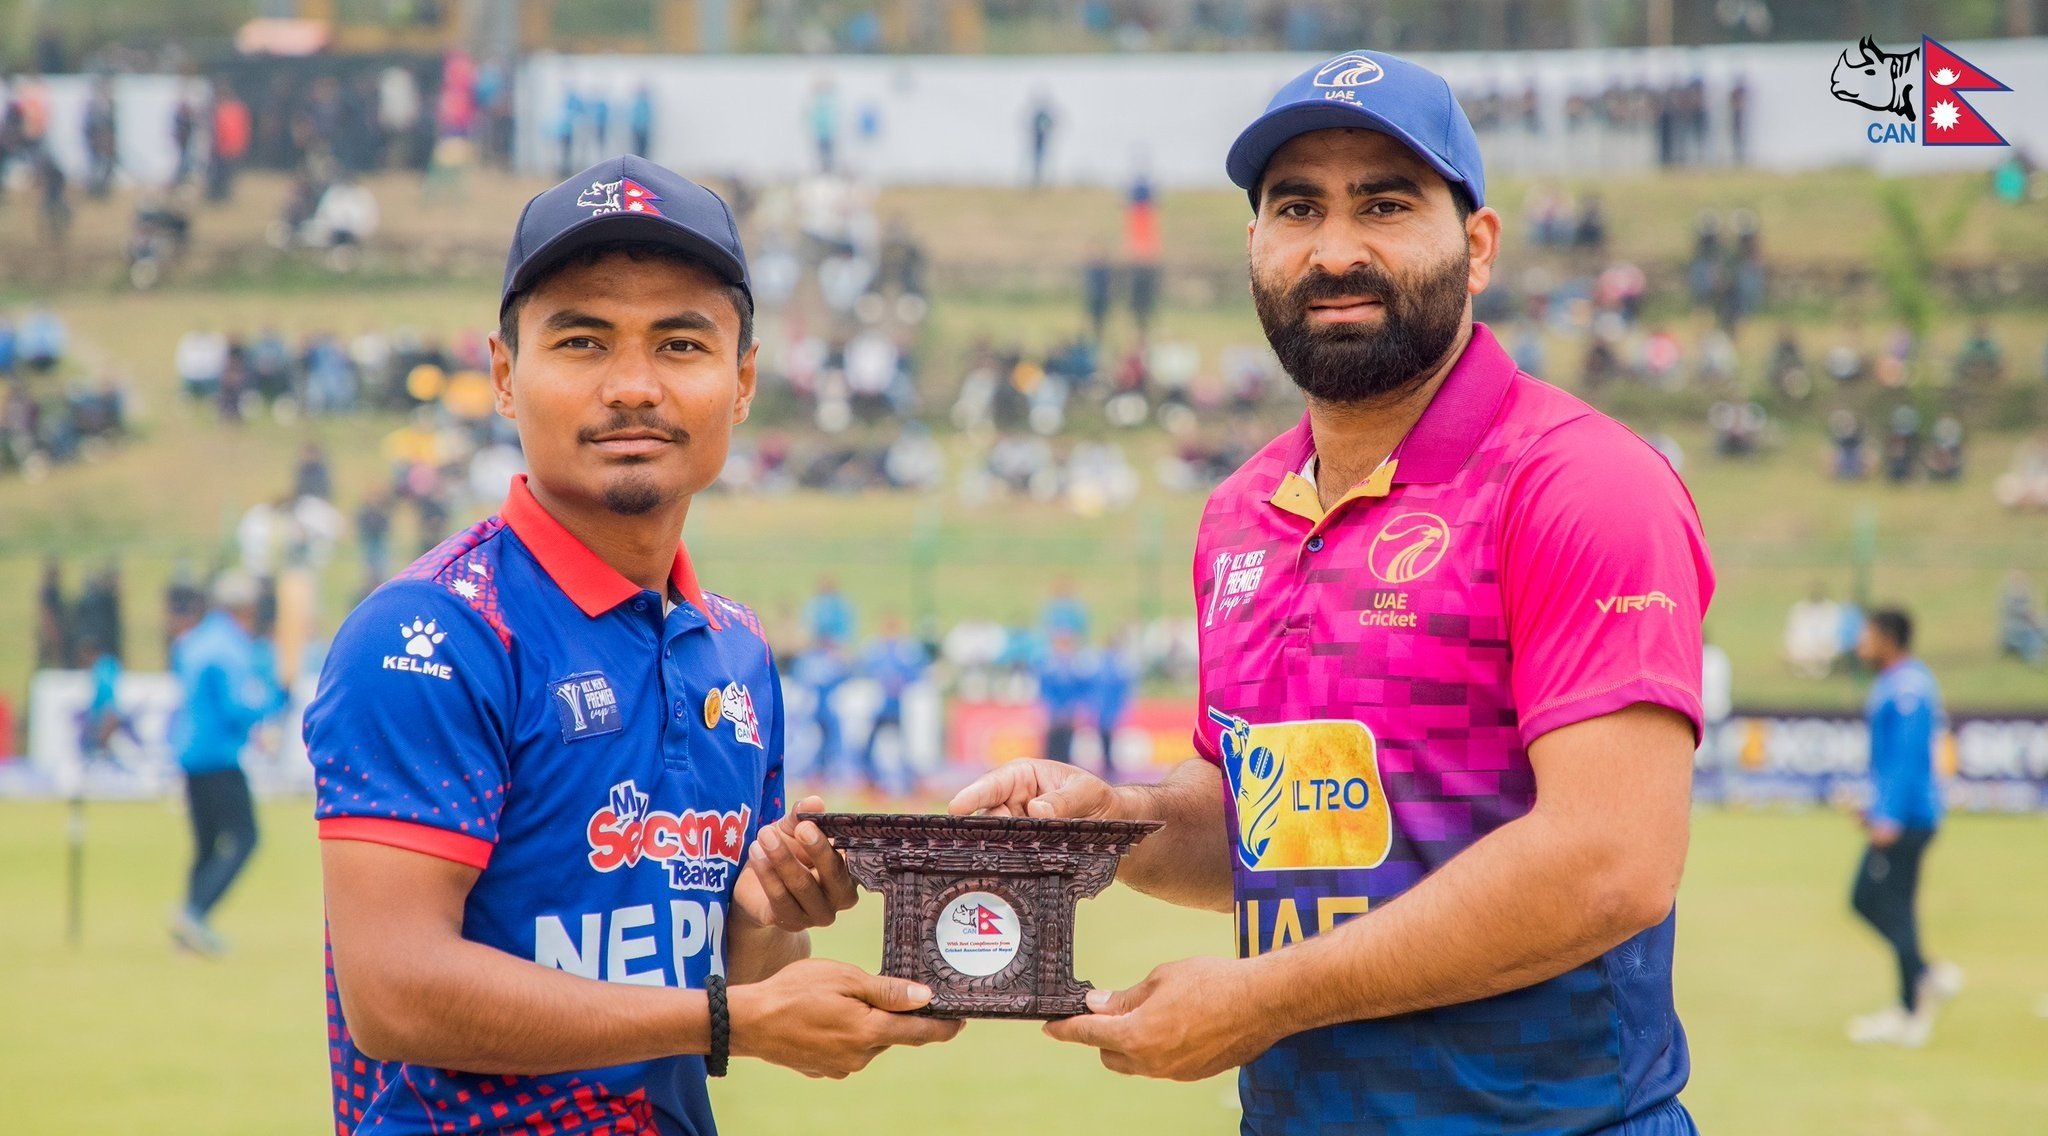 वर्षाका कारण रोकिएको नेपाल र यूएईबीचको फाइनल खेल आज हुँदै